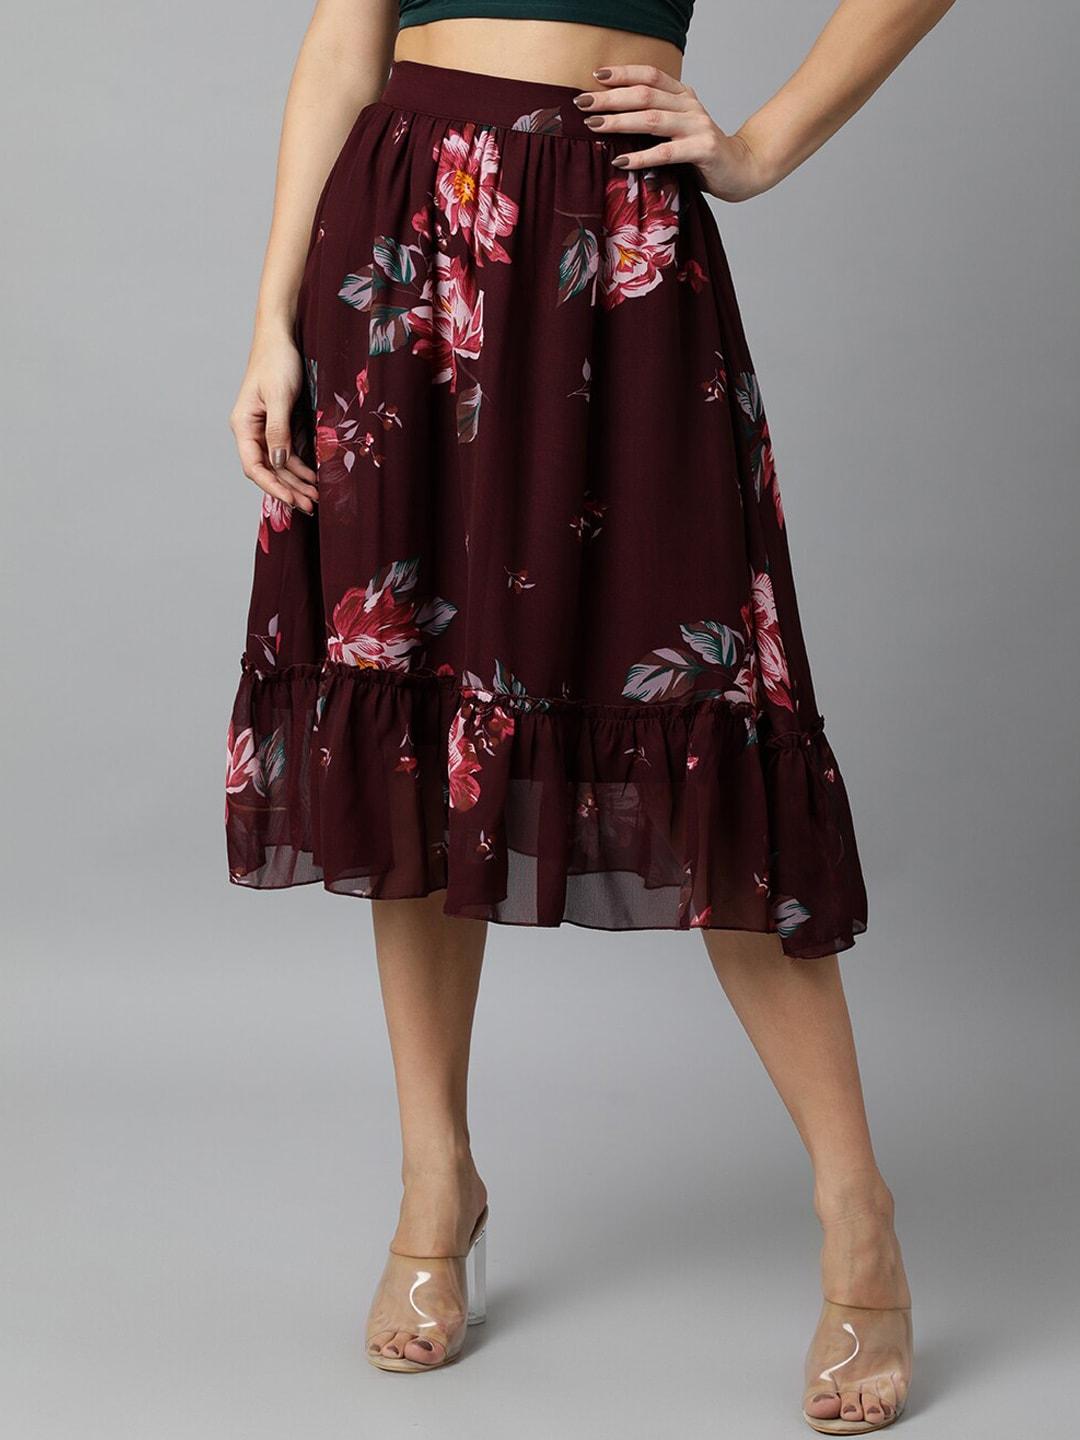 deebaco women maroon floral printed tiered midi skirt